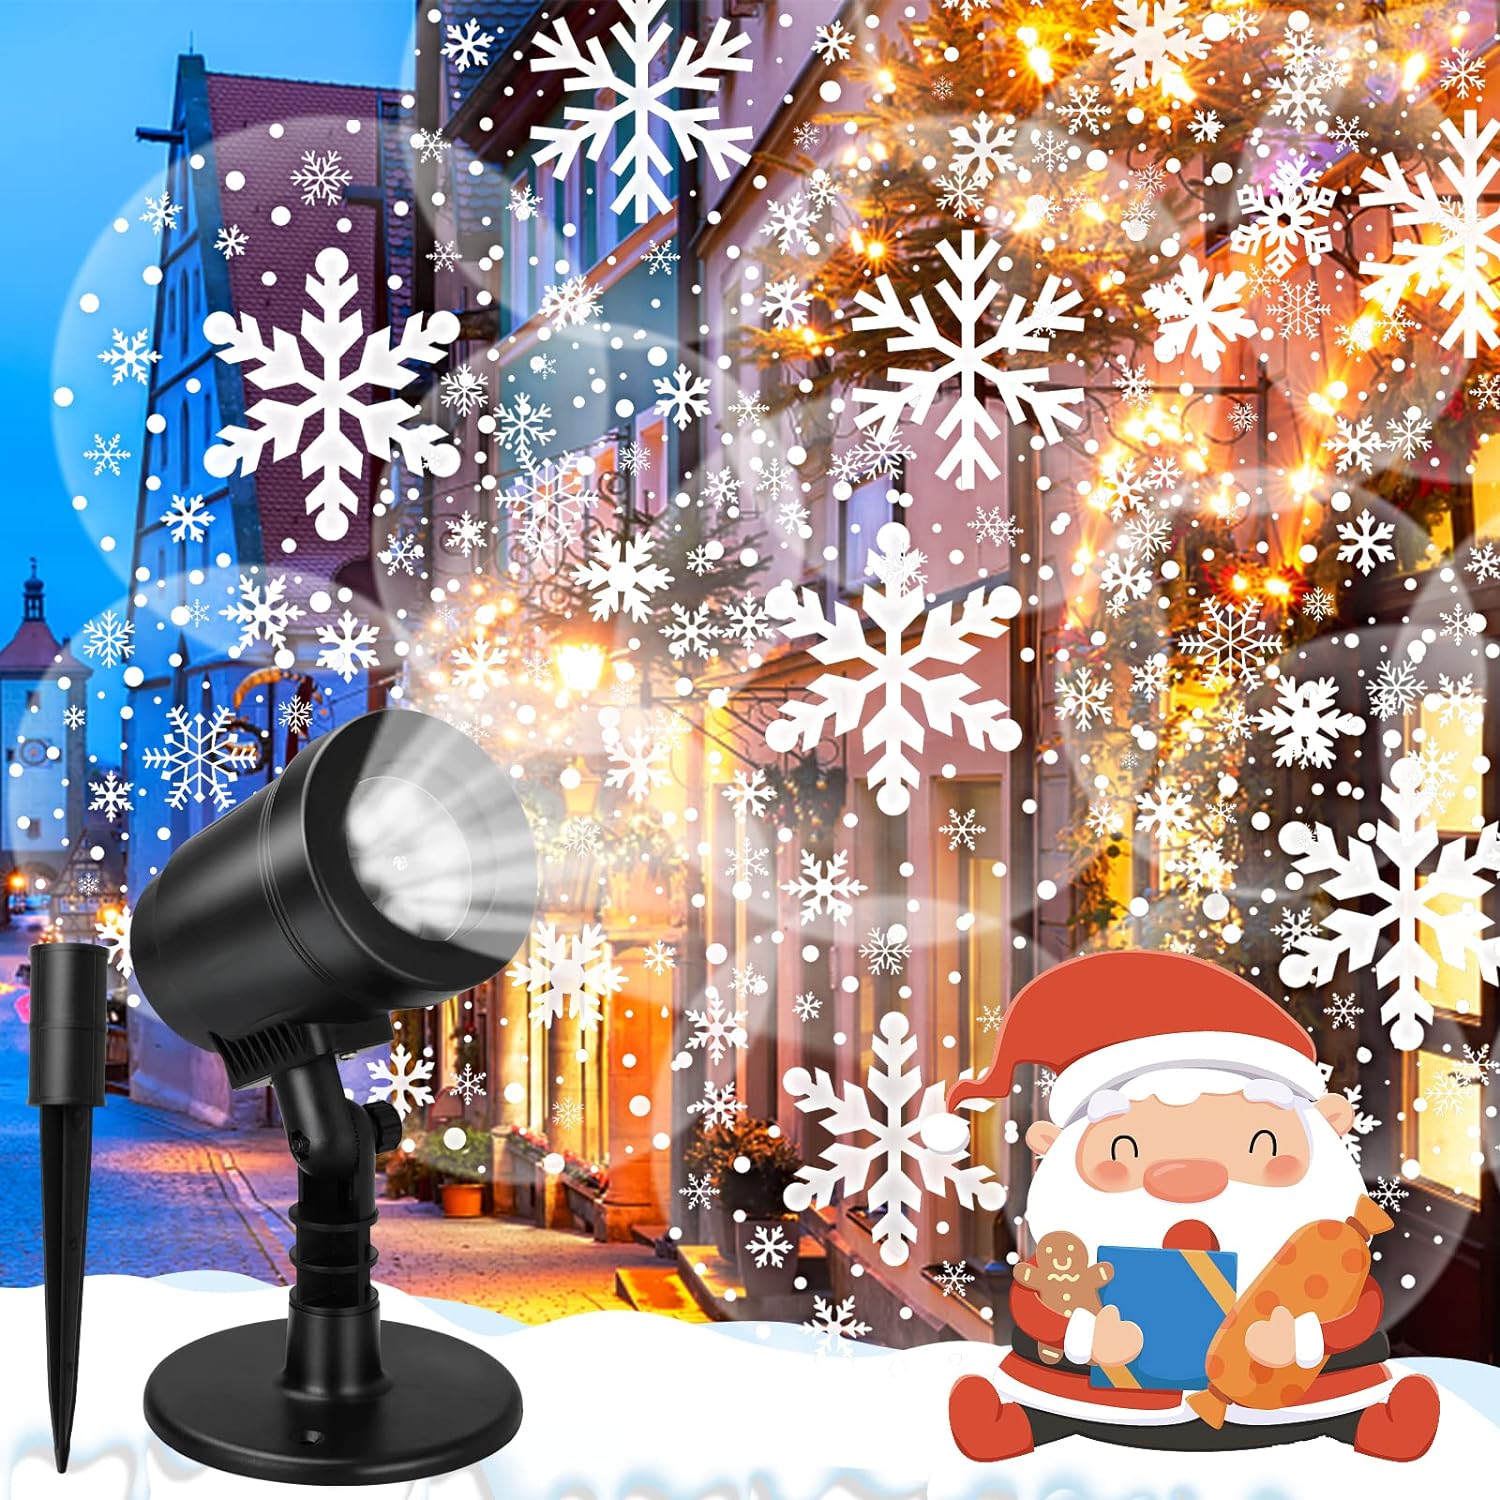 &#226;&#128;&#142;Inayou Christmas Snowflake Projector Lights Outdoor, IP65 Waterproof Snowflake Christmas Projector Light Decorations, LED Christmas Li